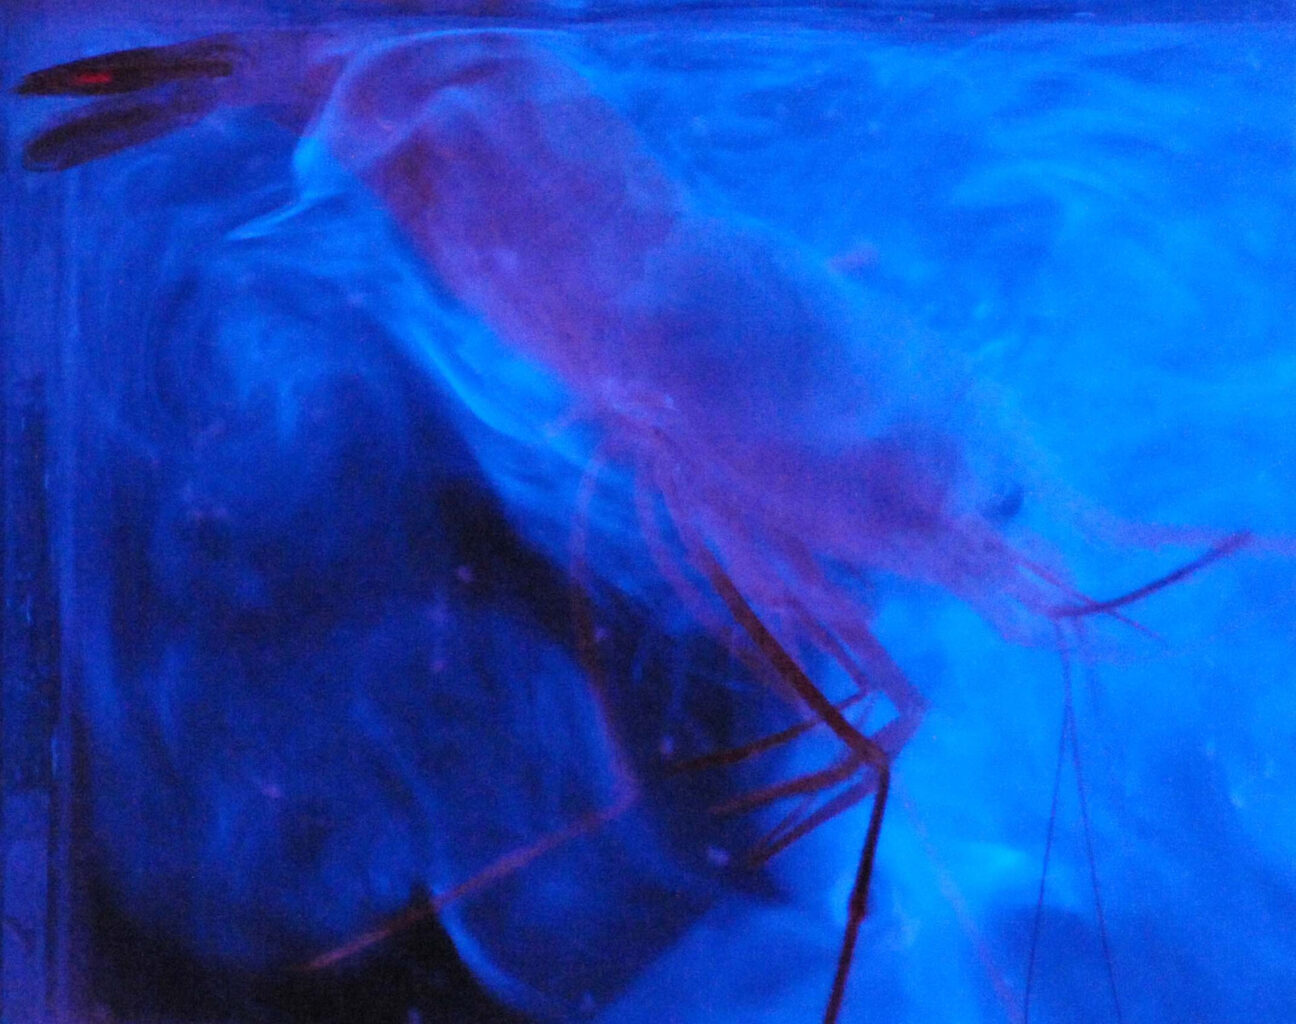 bioluminescence from a shrimp